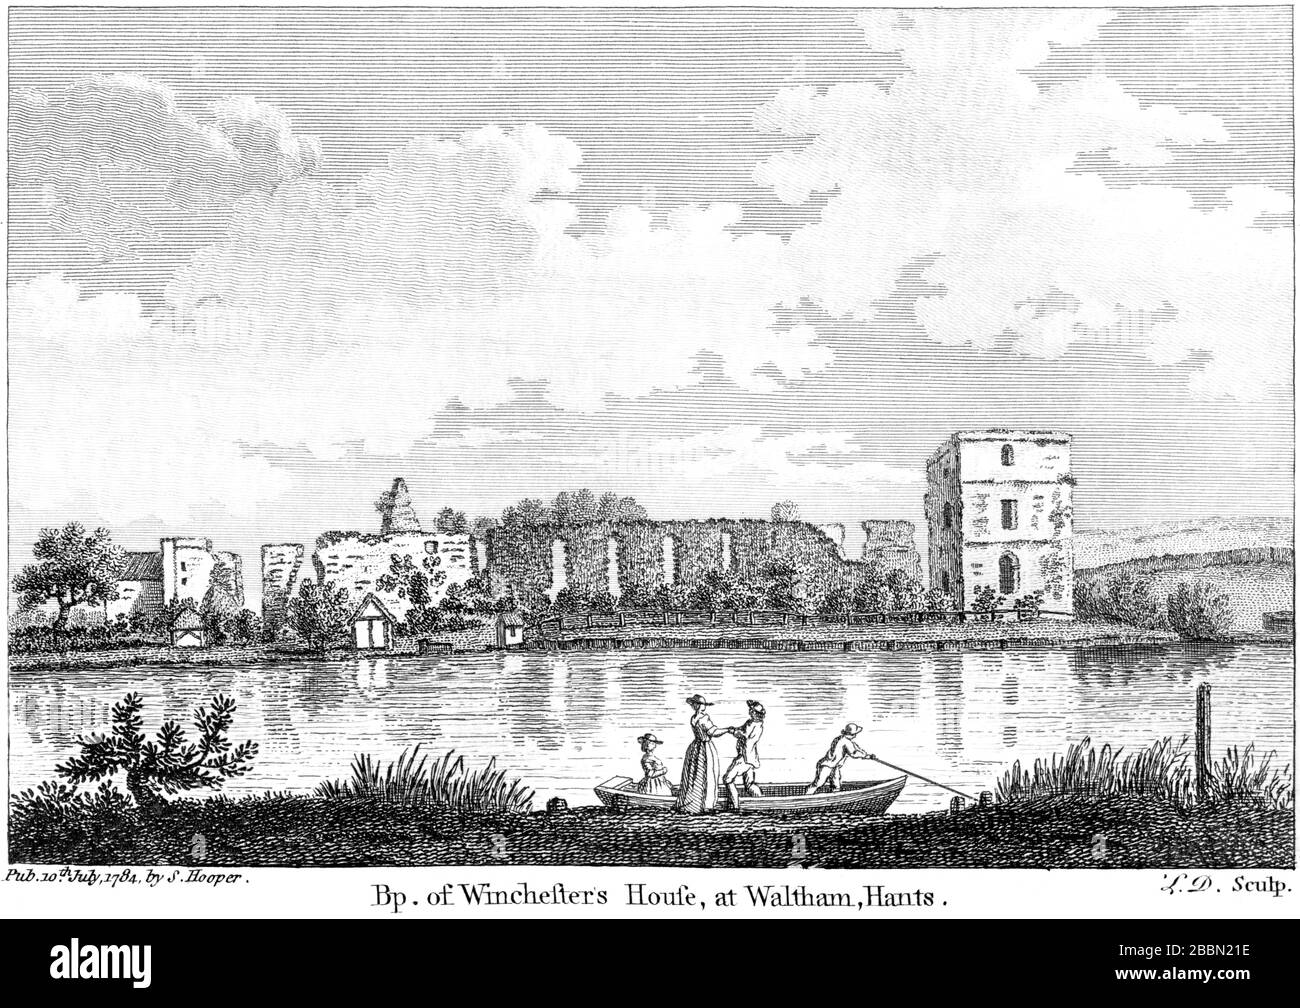 Eine Gravur von BP. pf Winchesters House in Waltham, Hants, 1784 (Bishops Waltham Palace), die in hoher Auflösung aus einem Buch gescannt wurde, das um das Jahr 1786 veröffentlicht wurde Stockfoto